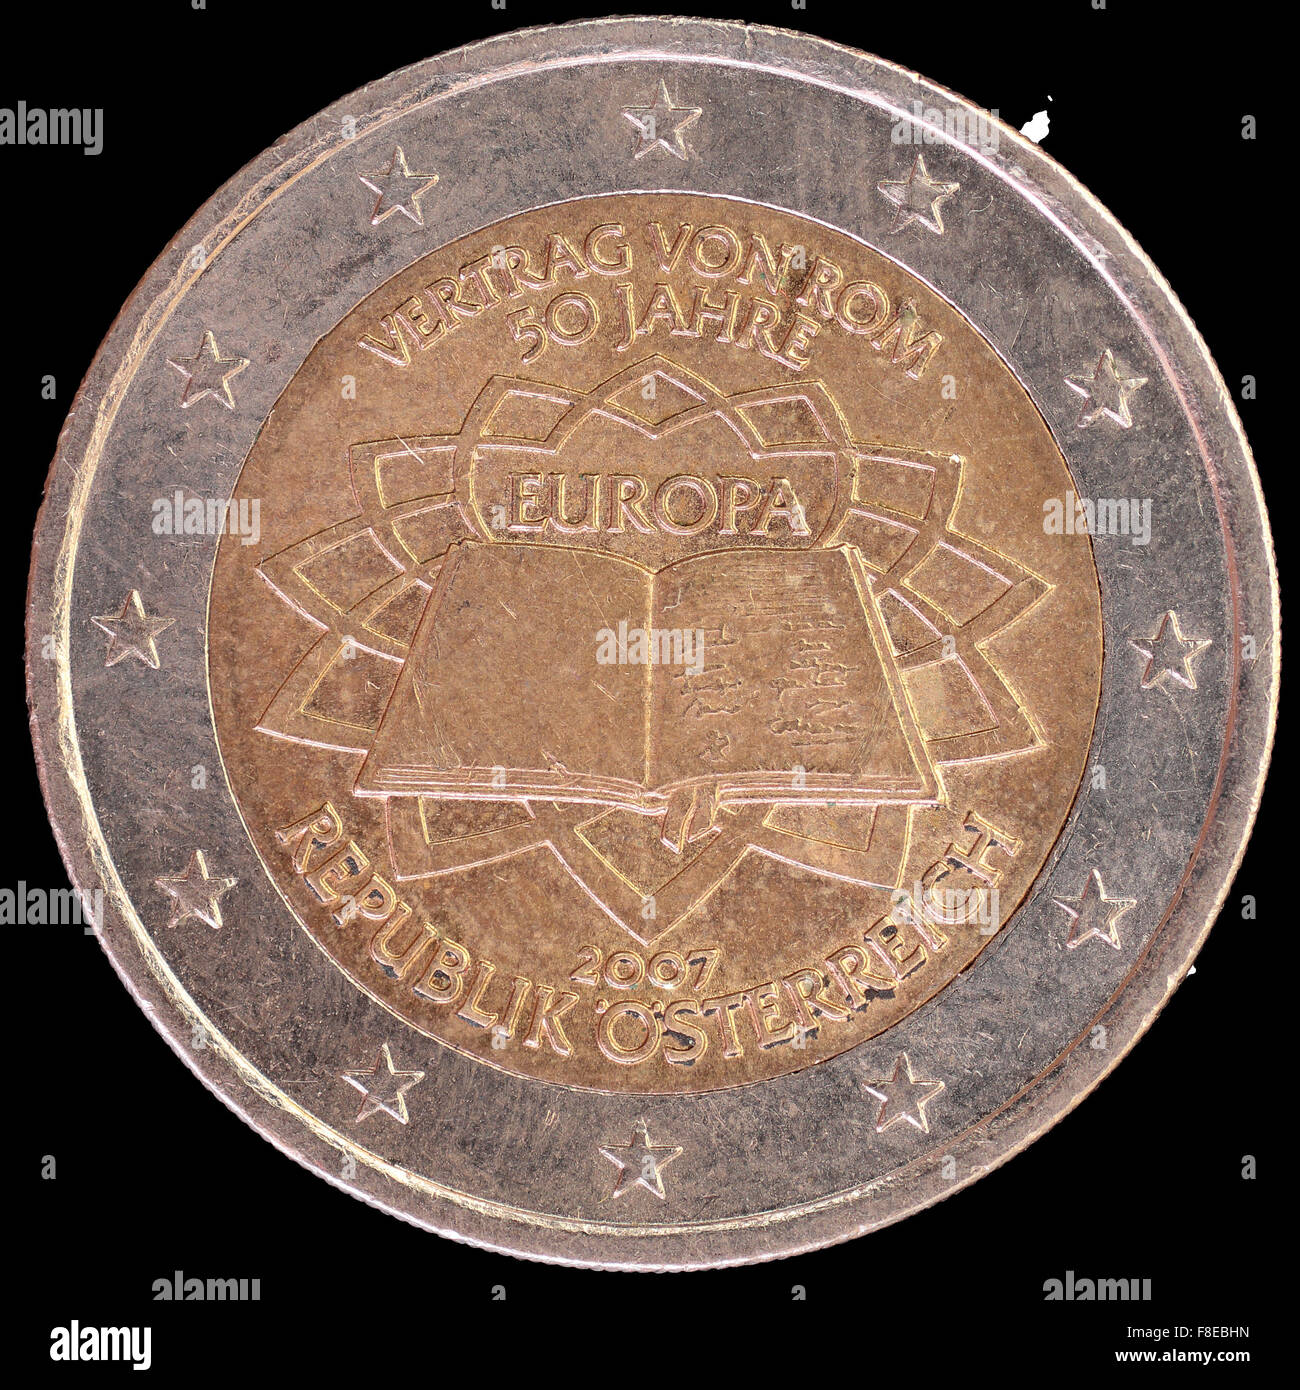 Eine Festschrift verteilt zwei-Euro-Münze von Österreich in 2007 feiert den Jahrestag der Römischen Verträge ausgestellt. Bild isol Stockfoto